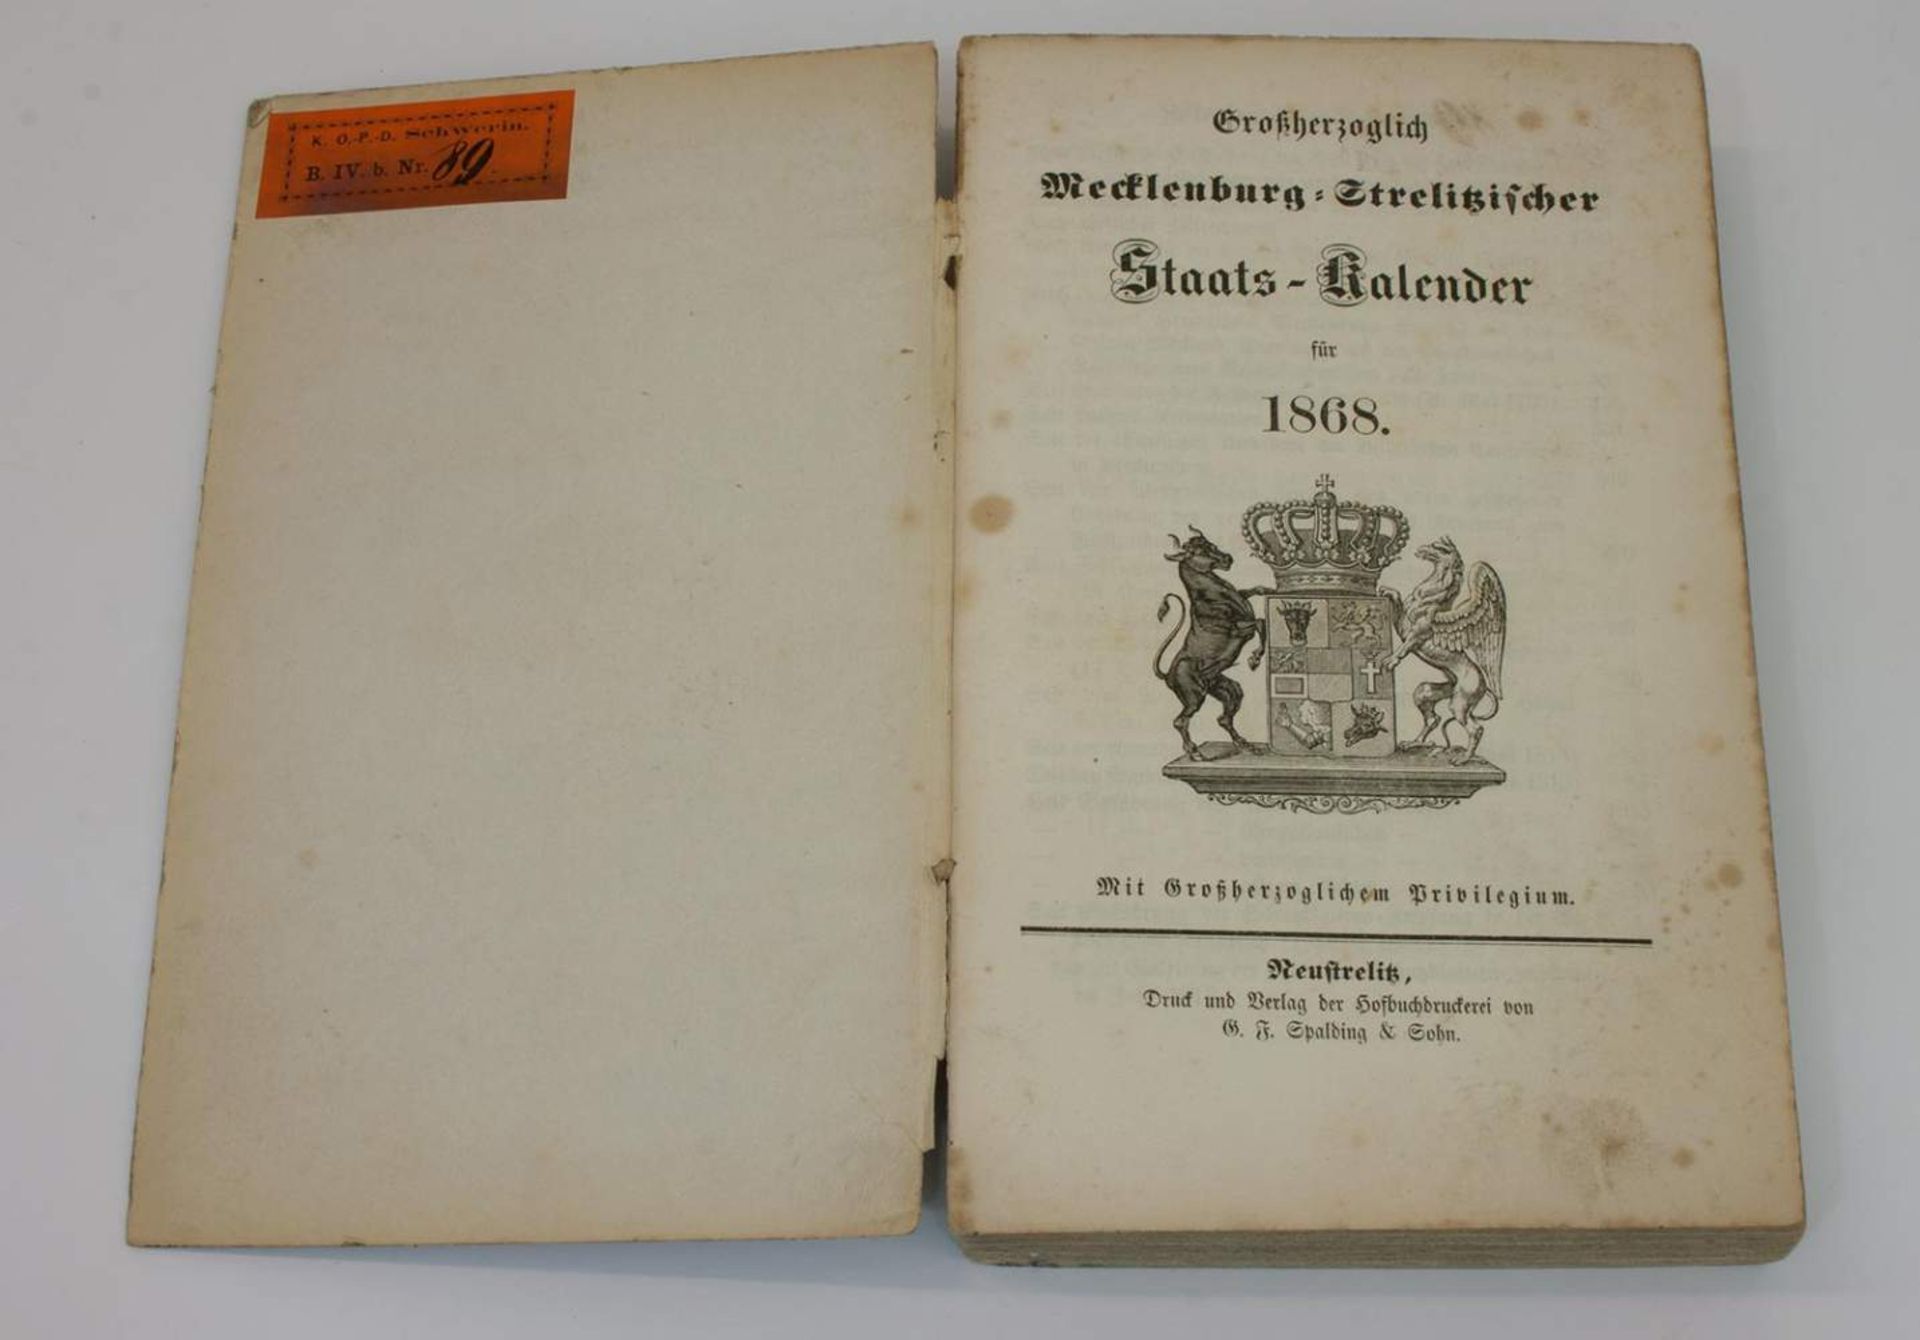 Staatskalender"Großherzoglich Mecklenburg - Strelitzischer Staats-Kalender 1868", Verlag der